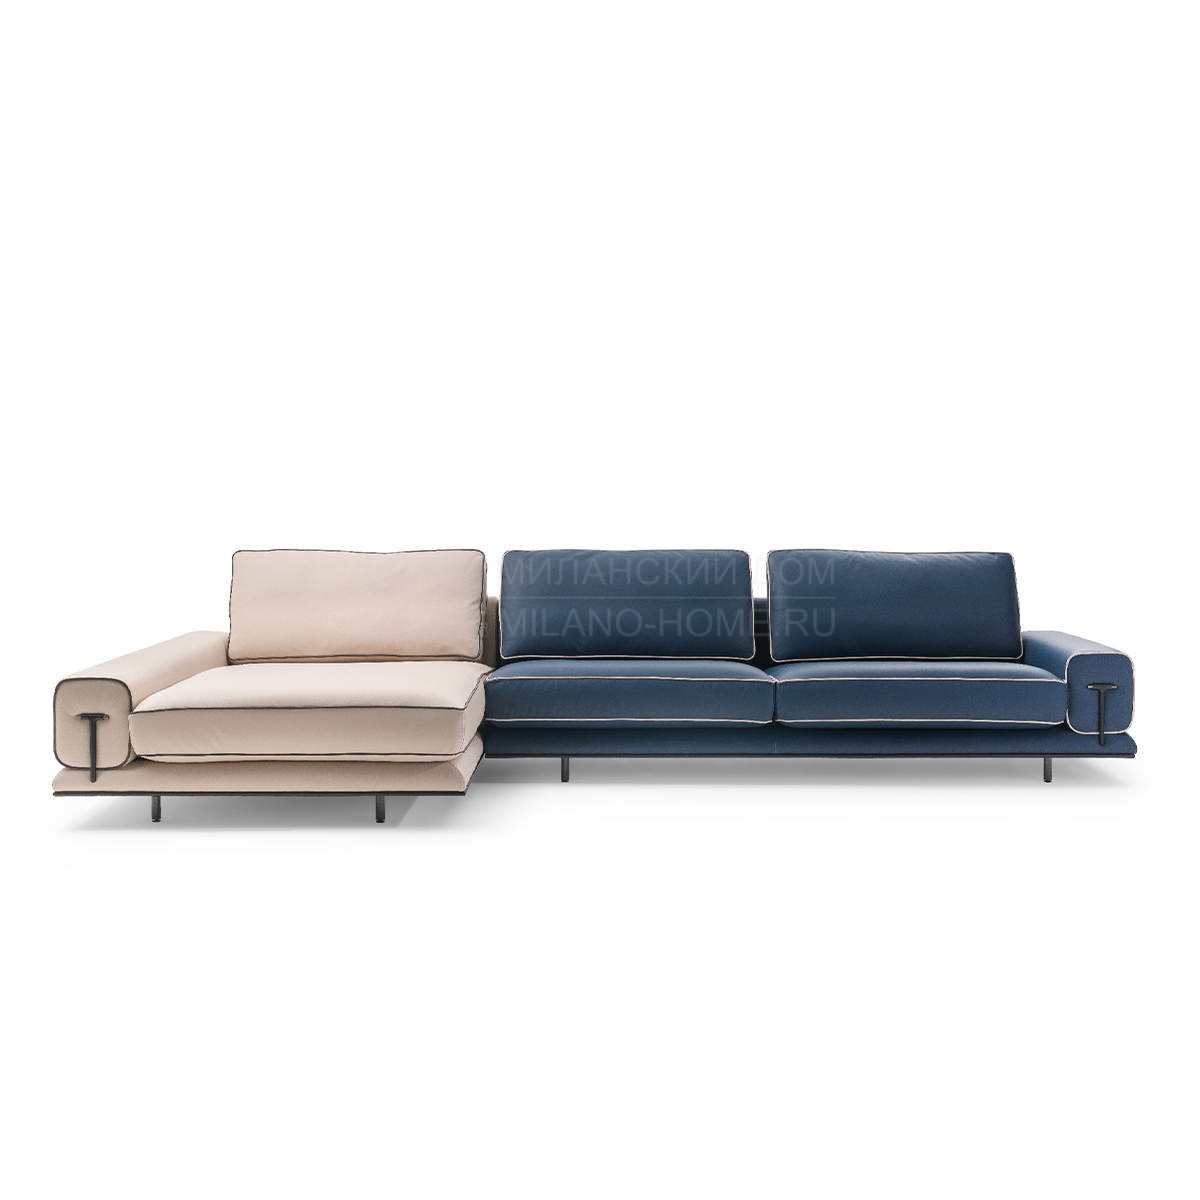 Модульный диван Blues modular sofa из Италии фабрики TURRI